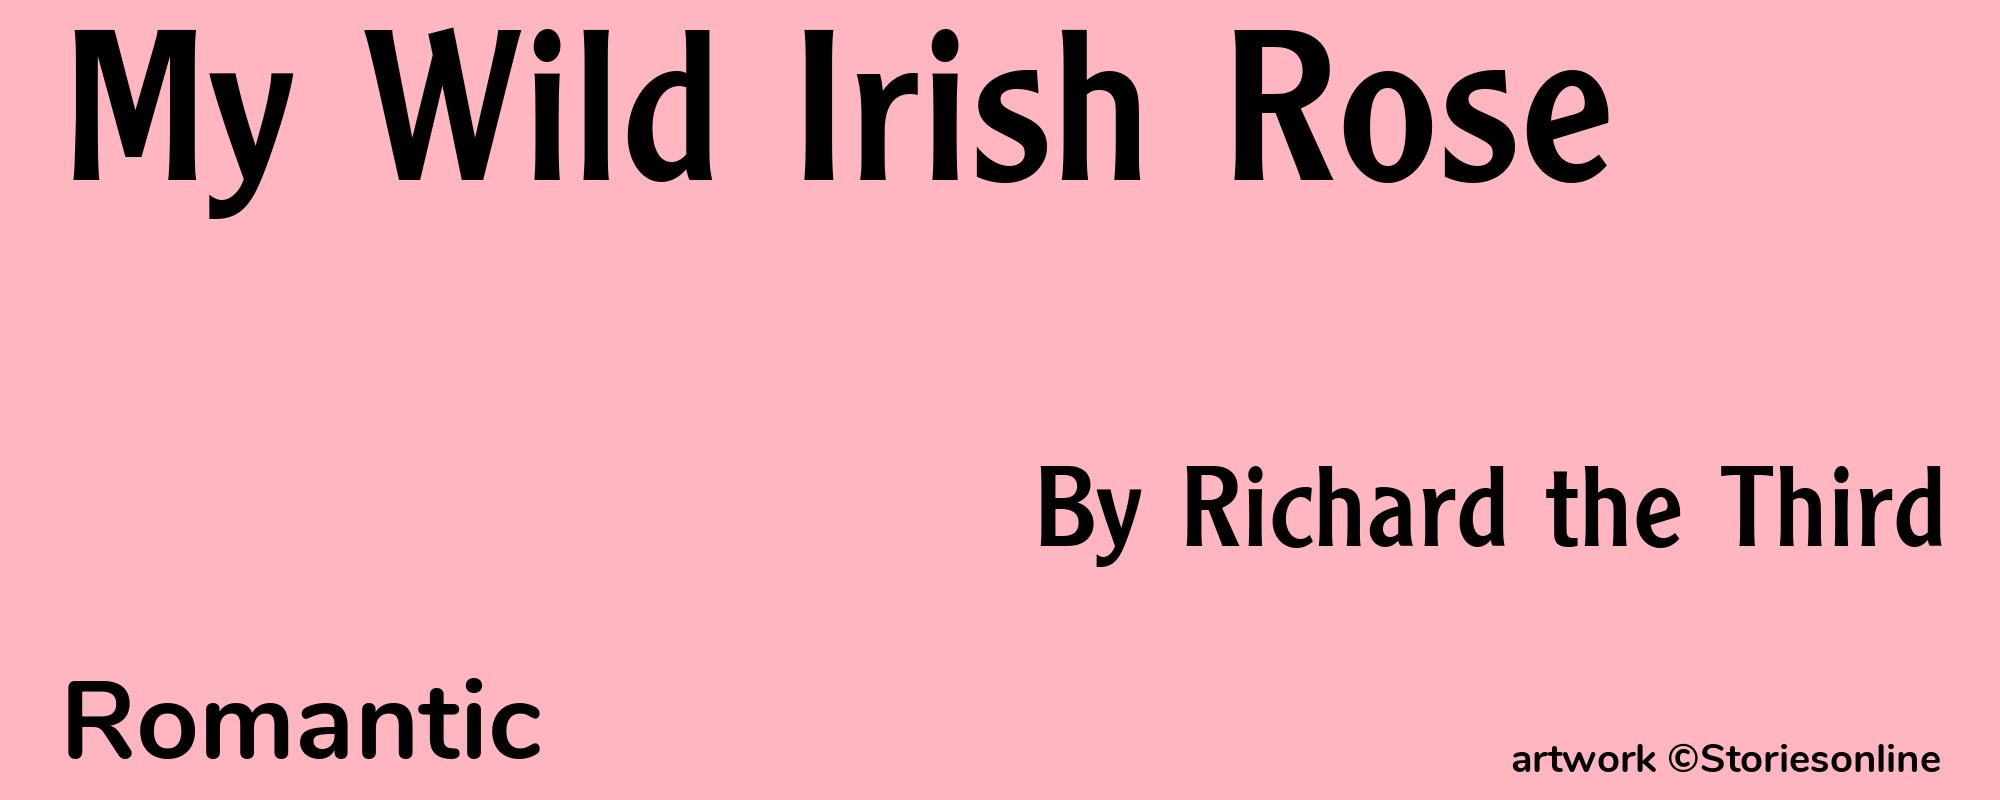 My Wild Irish Rose - Cover